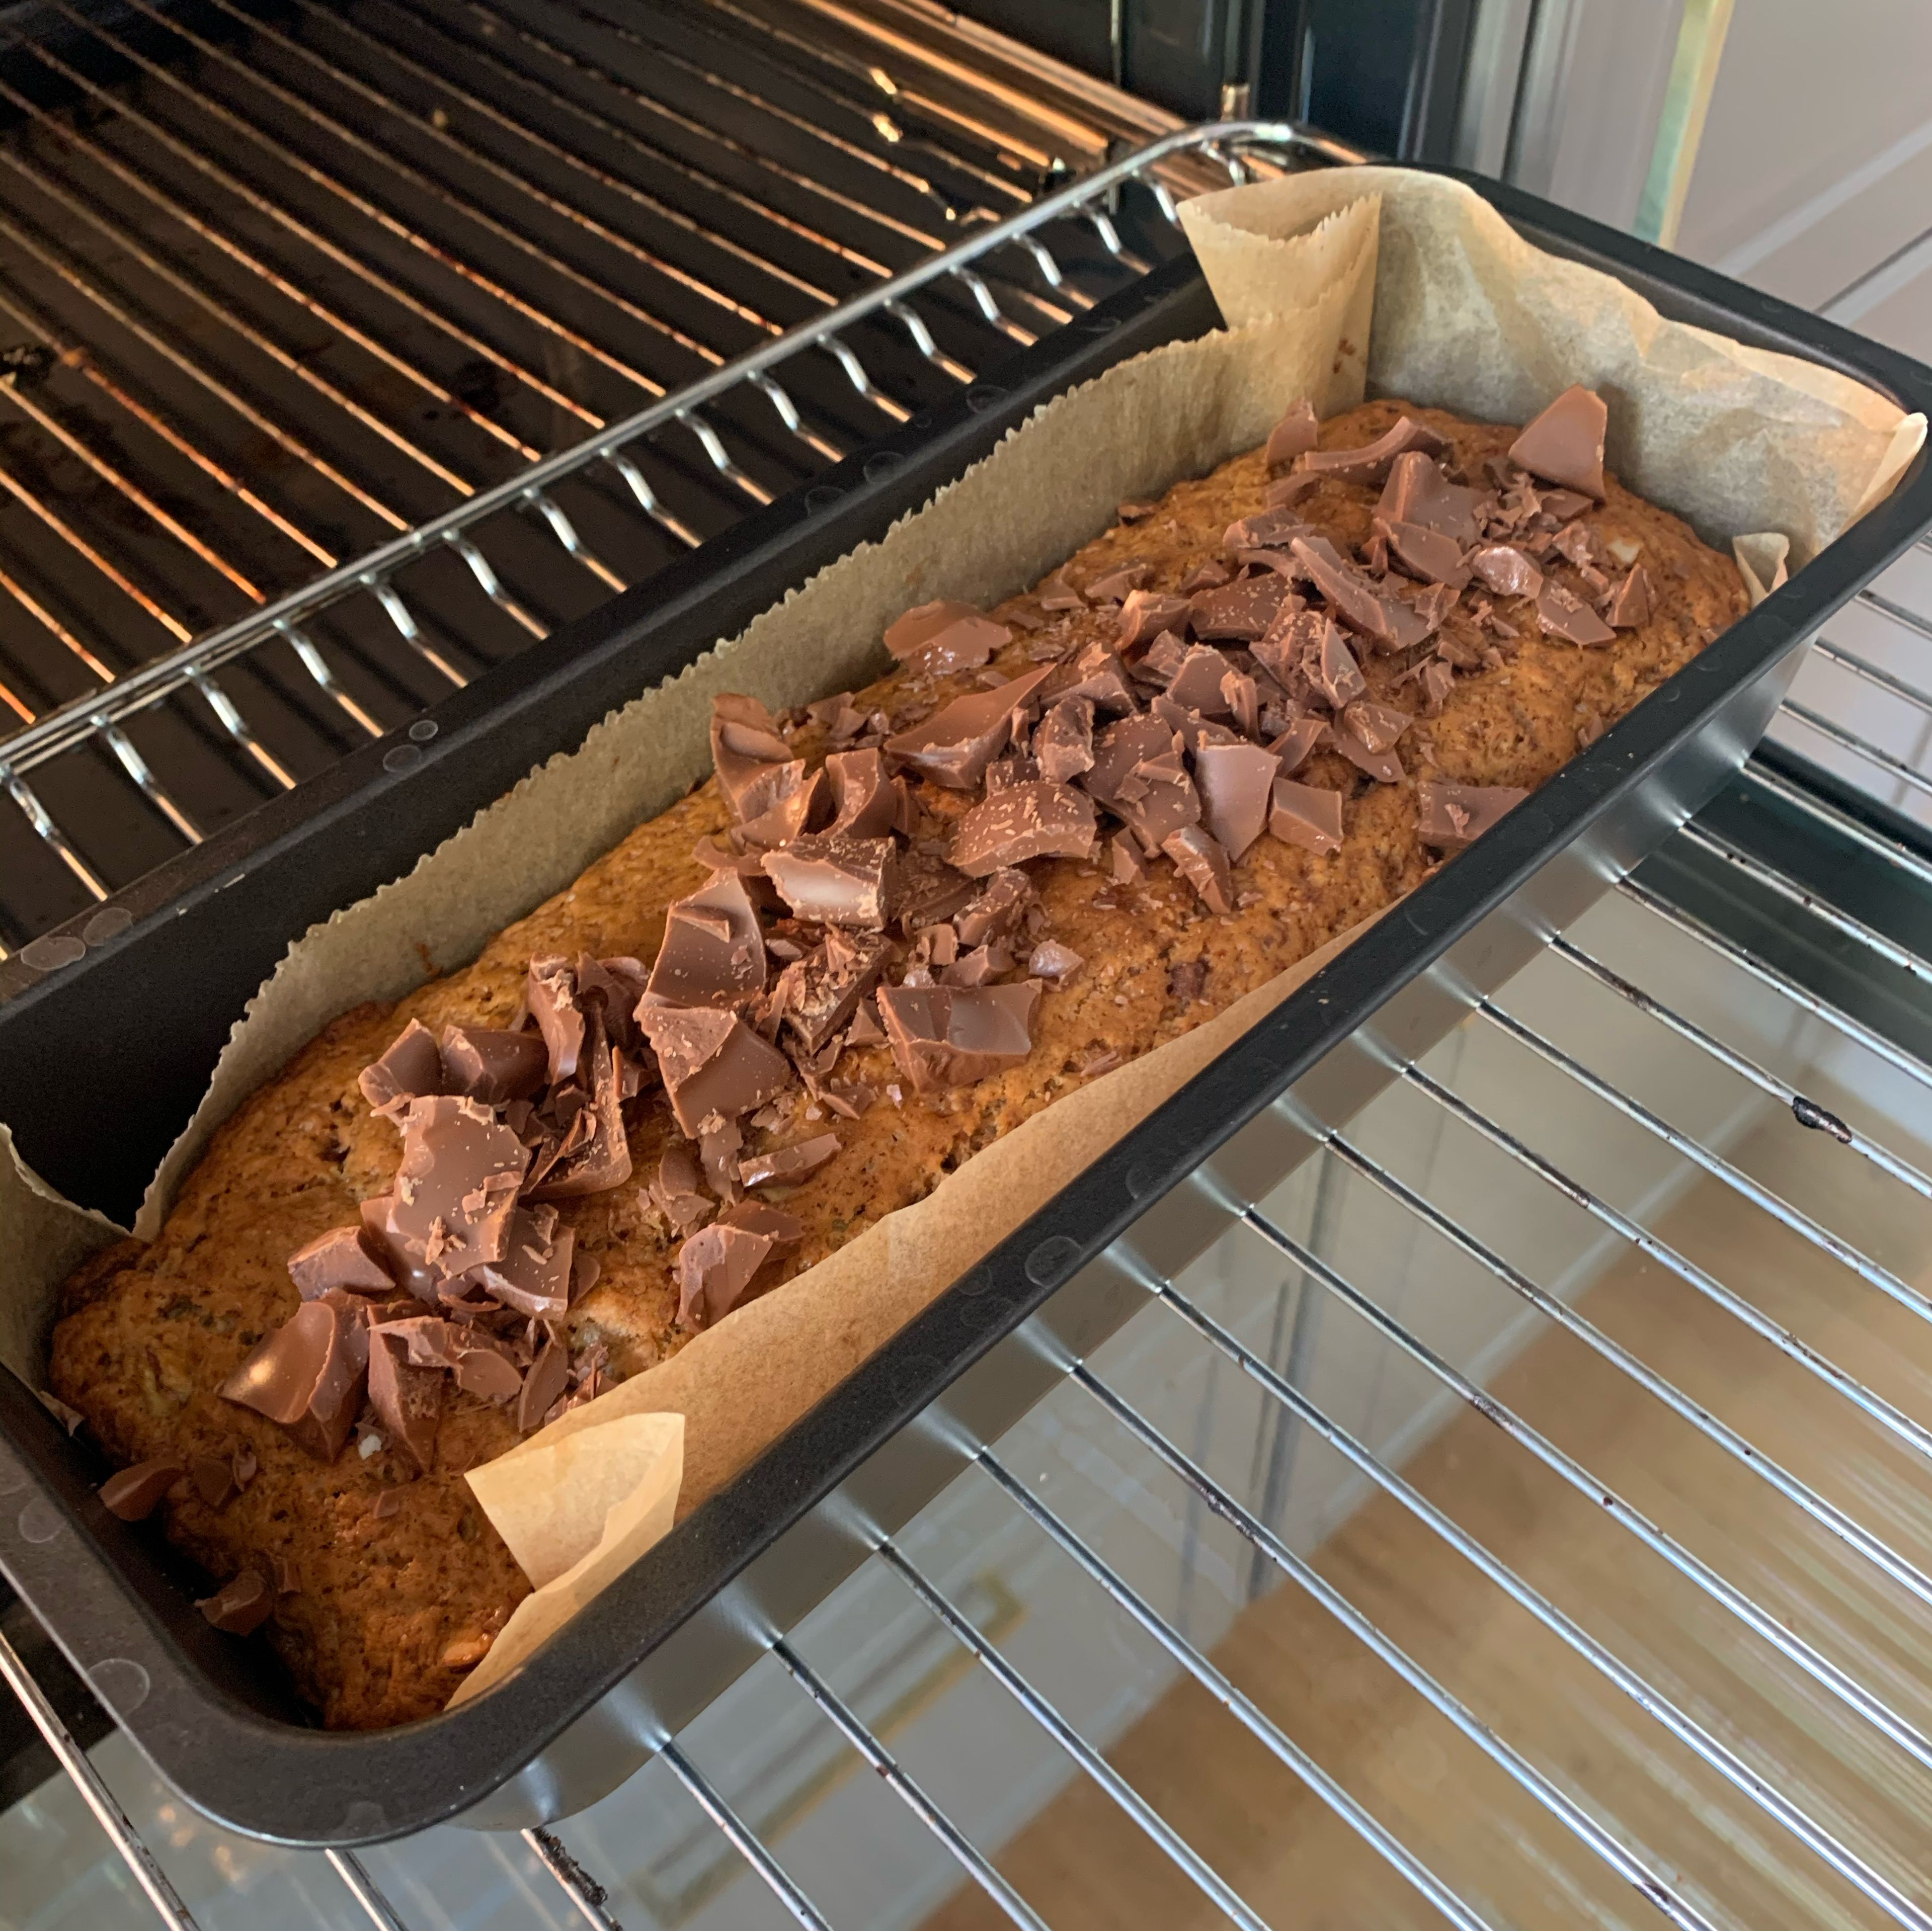 Nach Ablauf der Zeit mit einem Holzstäbchen testen, ob der Kuchen durch ist. Dann restliche Schokolade darauf verteilen und bei geöffneter Tür einige Minuten im Ofen stehen lassen, damit die Stücke festkleben können. Fertig!